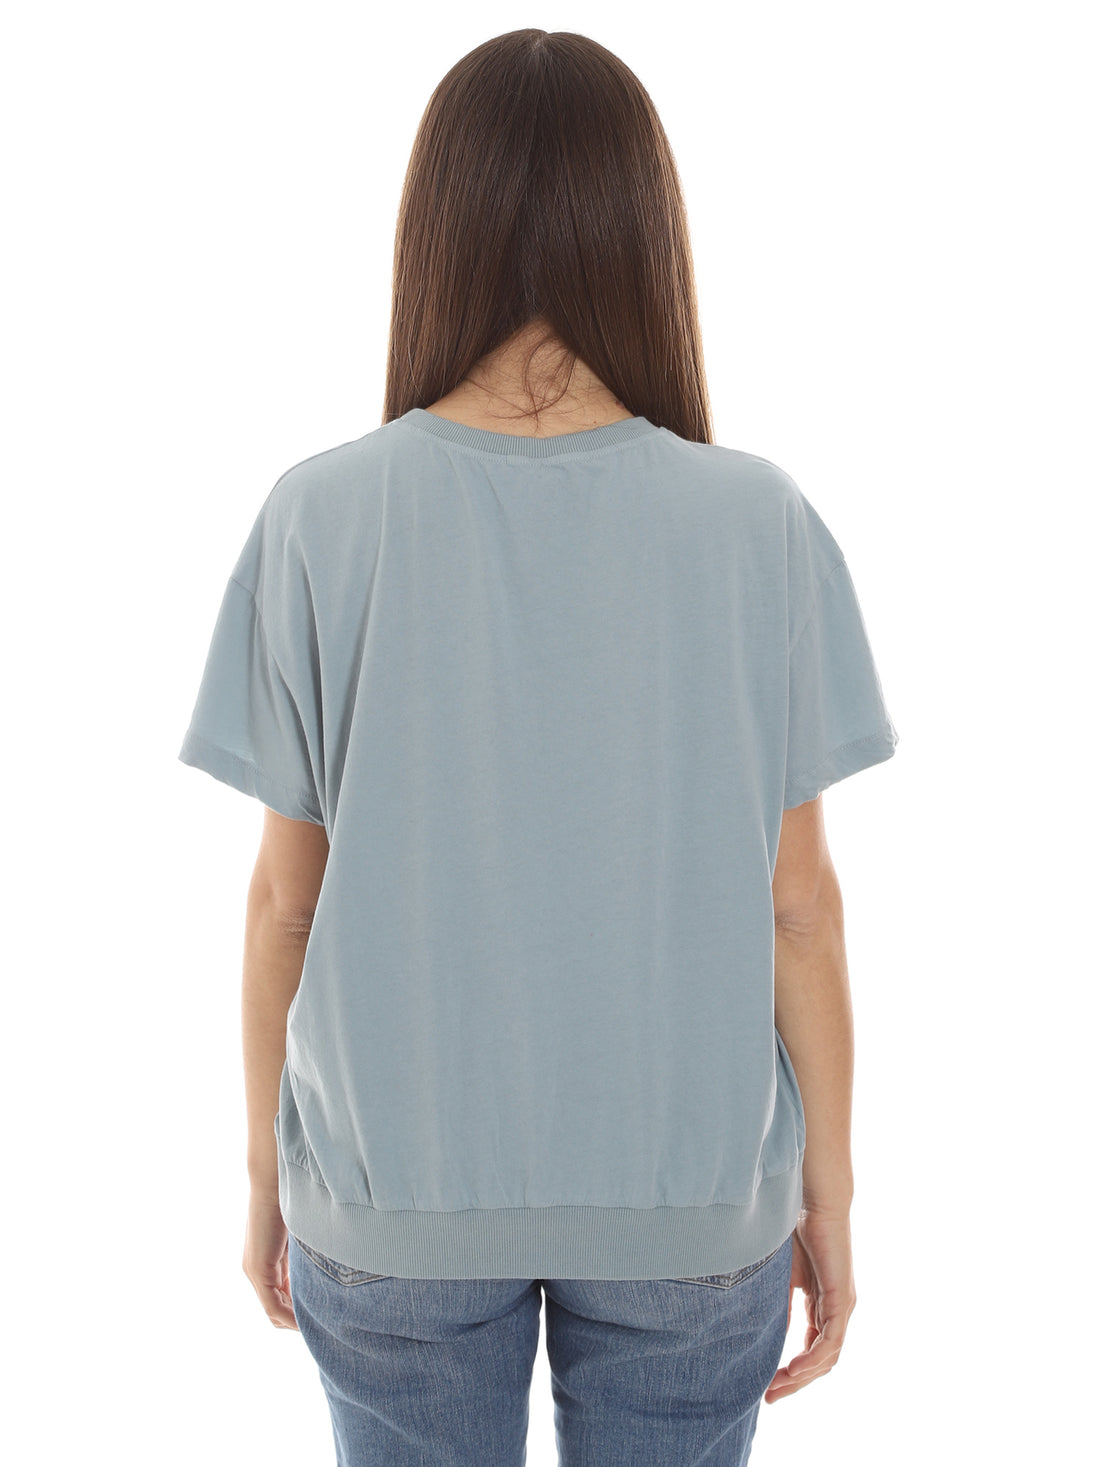 T-shirt Blu Alessia Santi